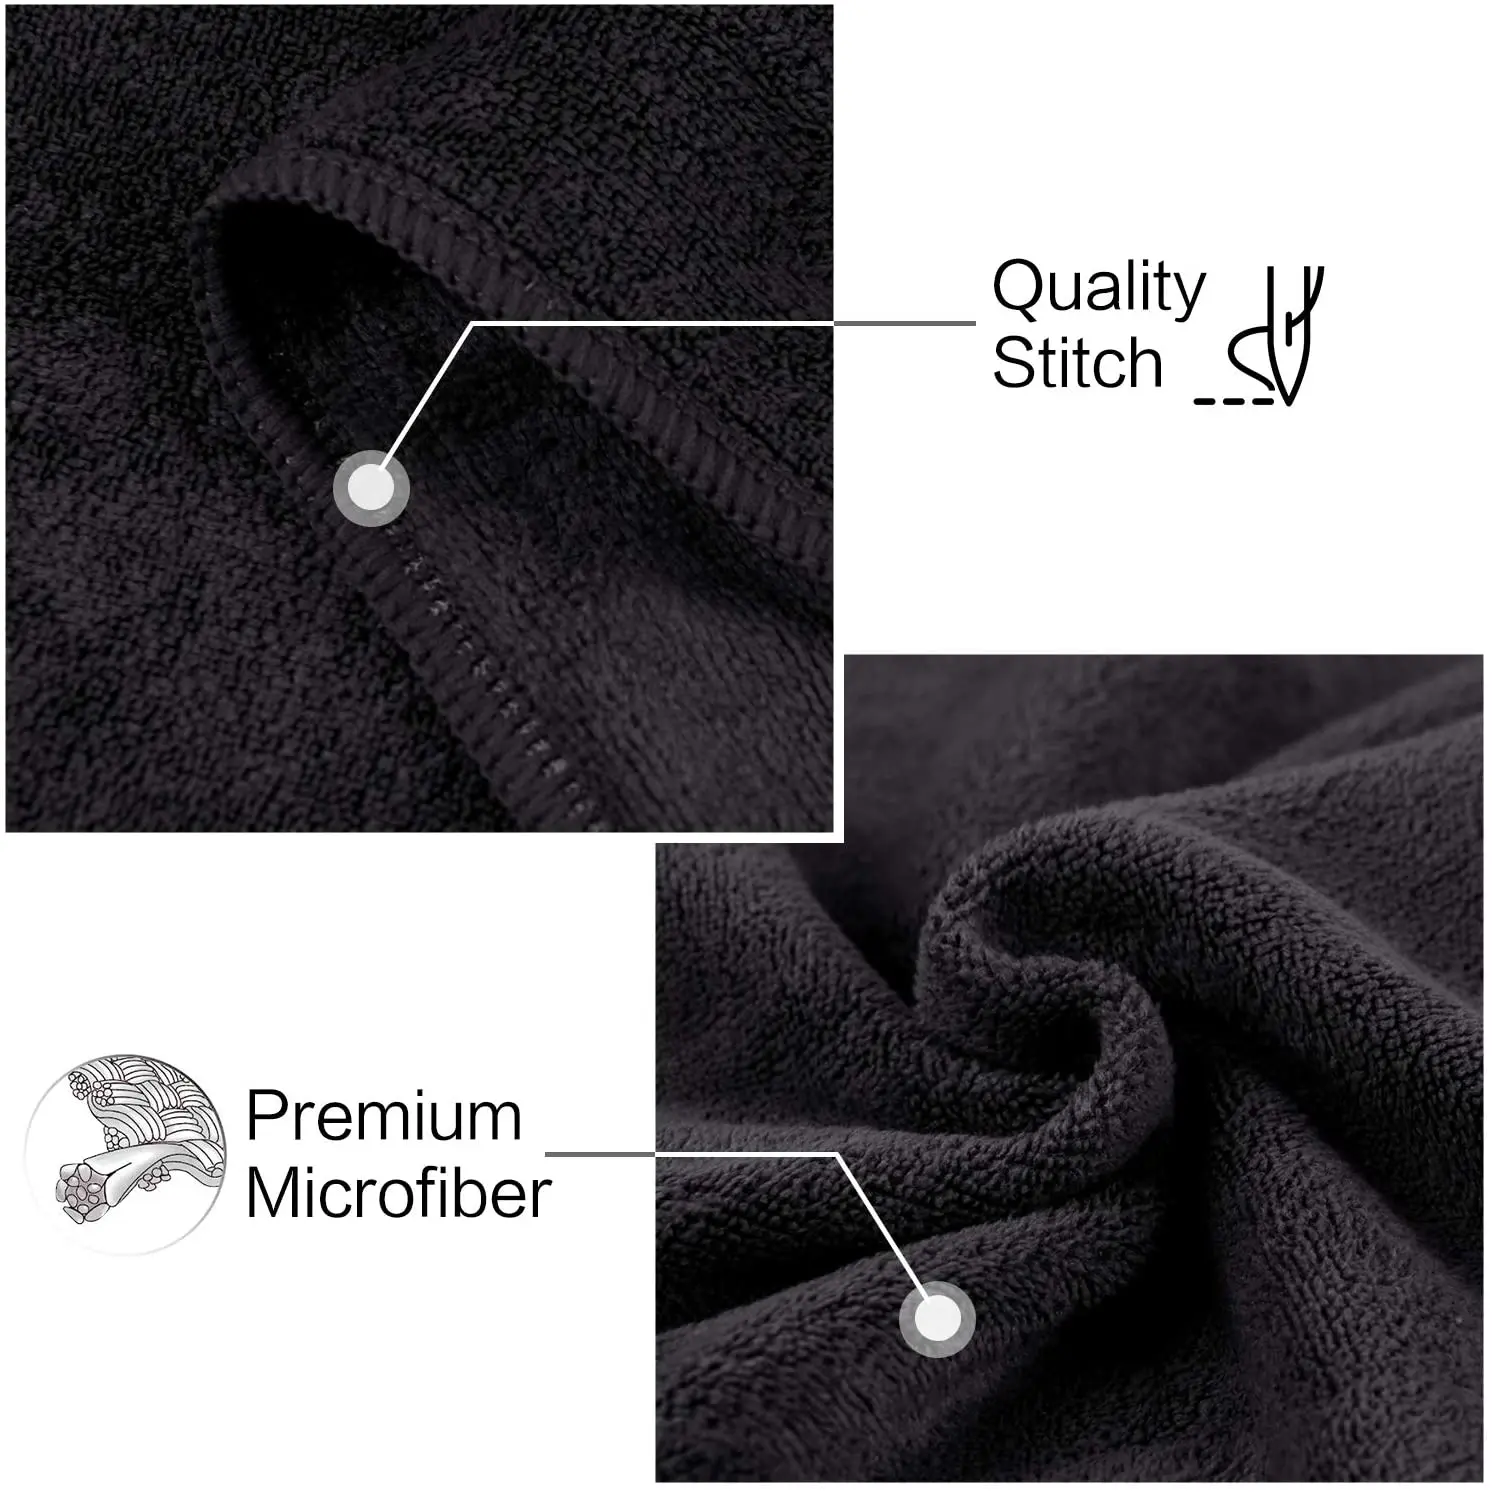 Custom Size Microfiber Sport Gym Towel With Logo - Buy Gym Towel,Sport ...